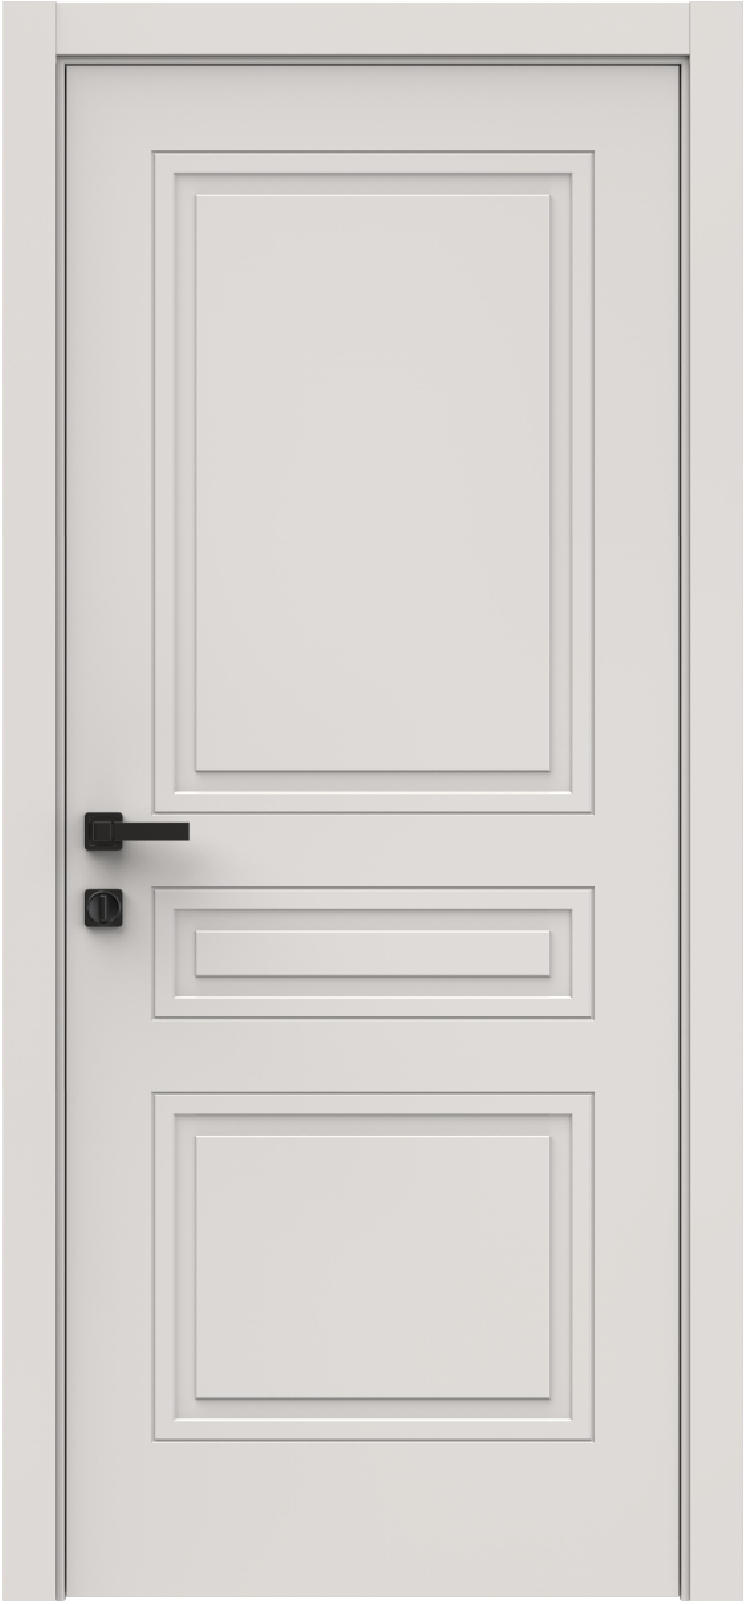 Questdoors Межкомнатная дверь QID3, арт. 26323 - фото №1